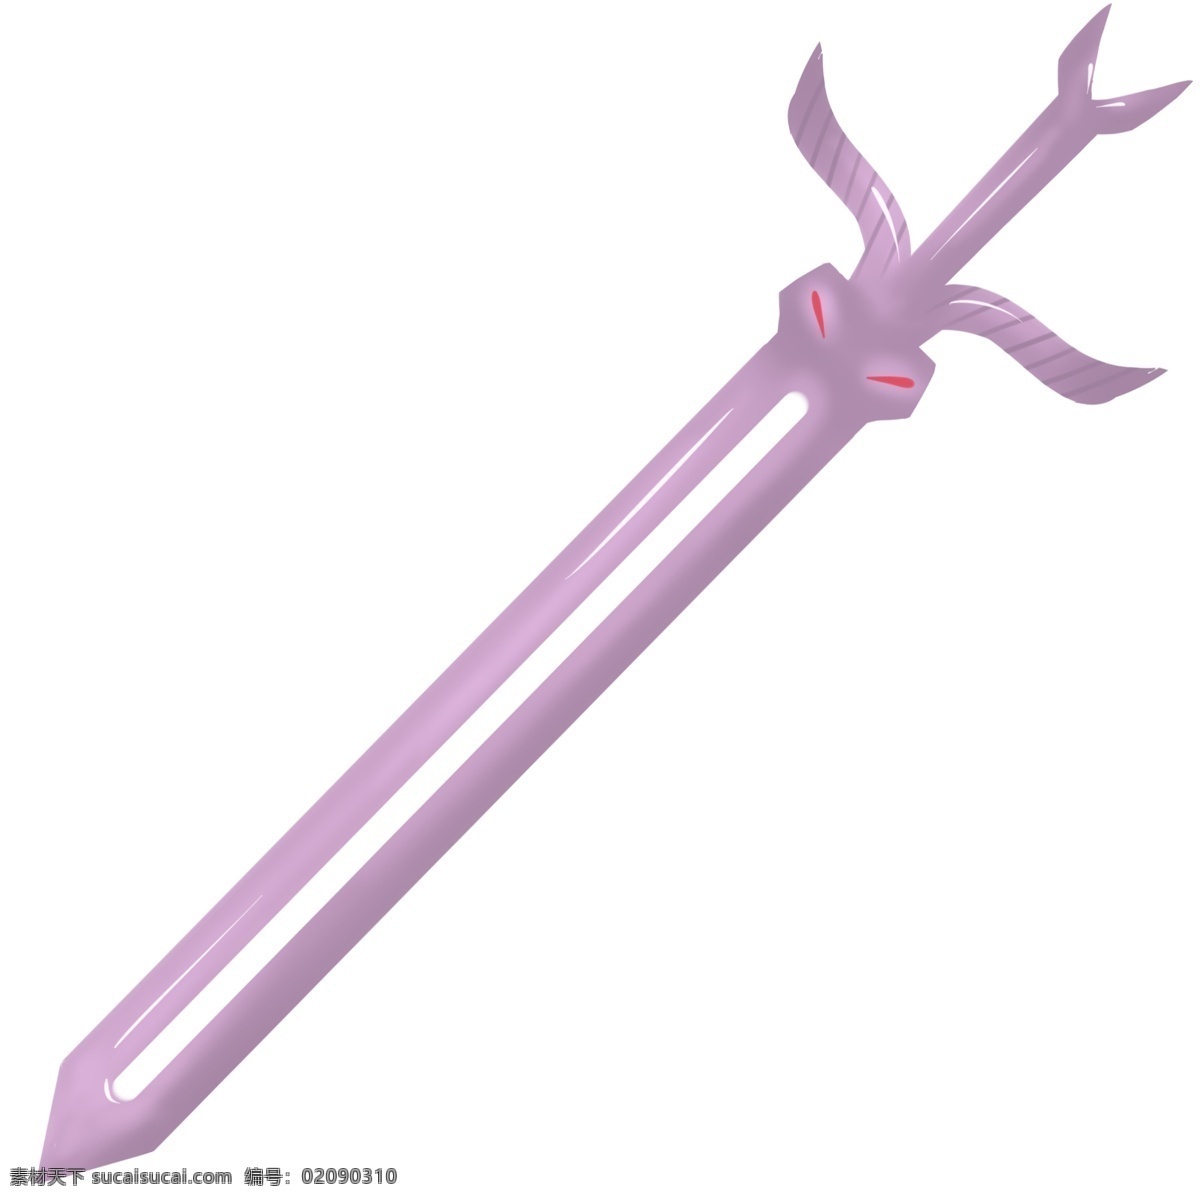 紫色 长剑 装饰 插画 紫色的长剑 锋利的长剑 漂亮的长剑 创意长剑 古风长剑 武器长剑 长剑装饰